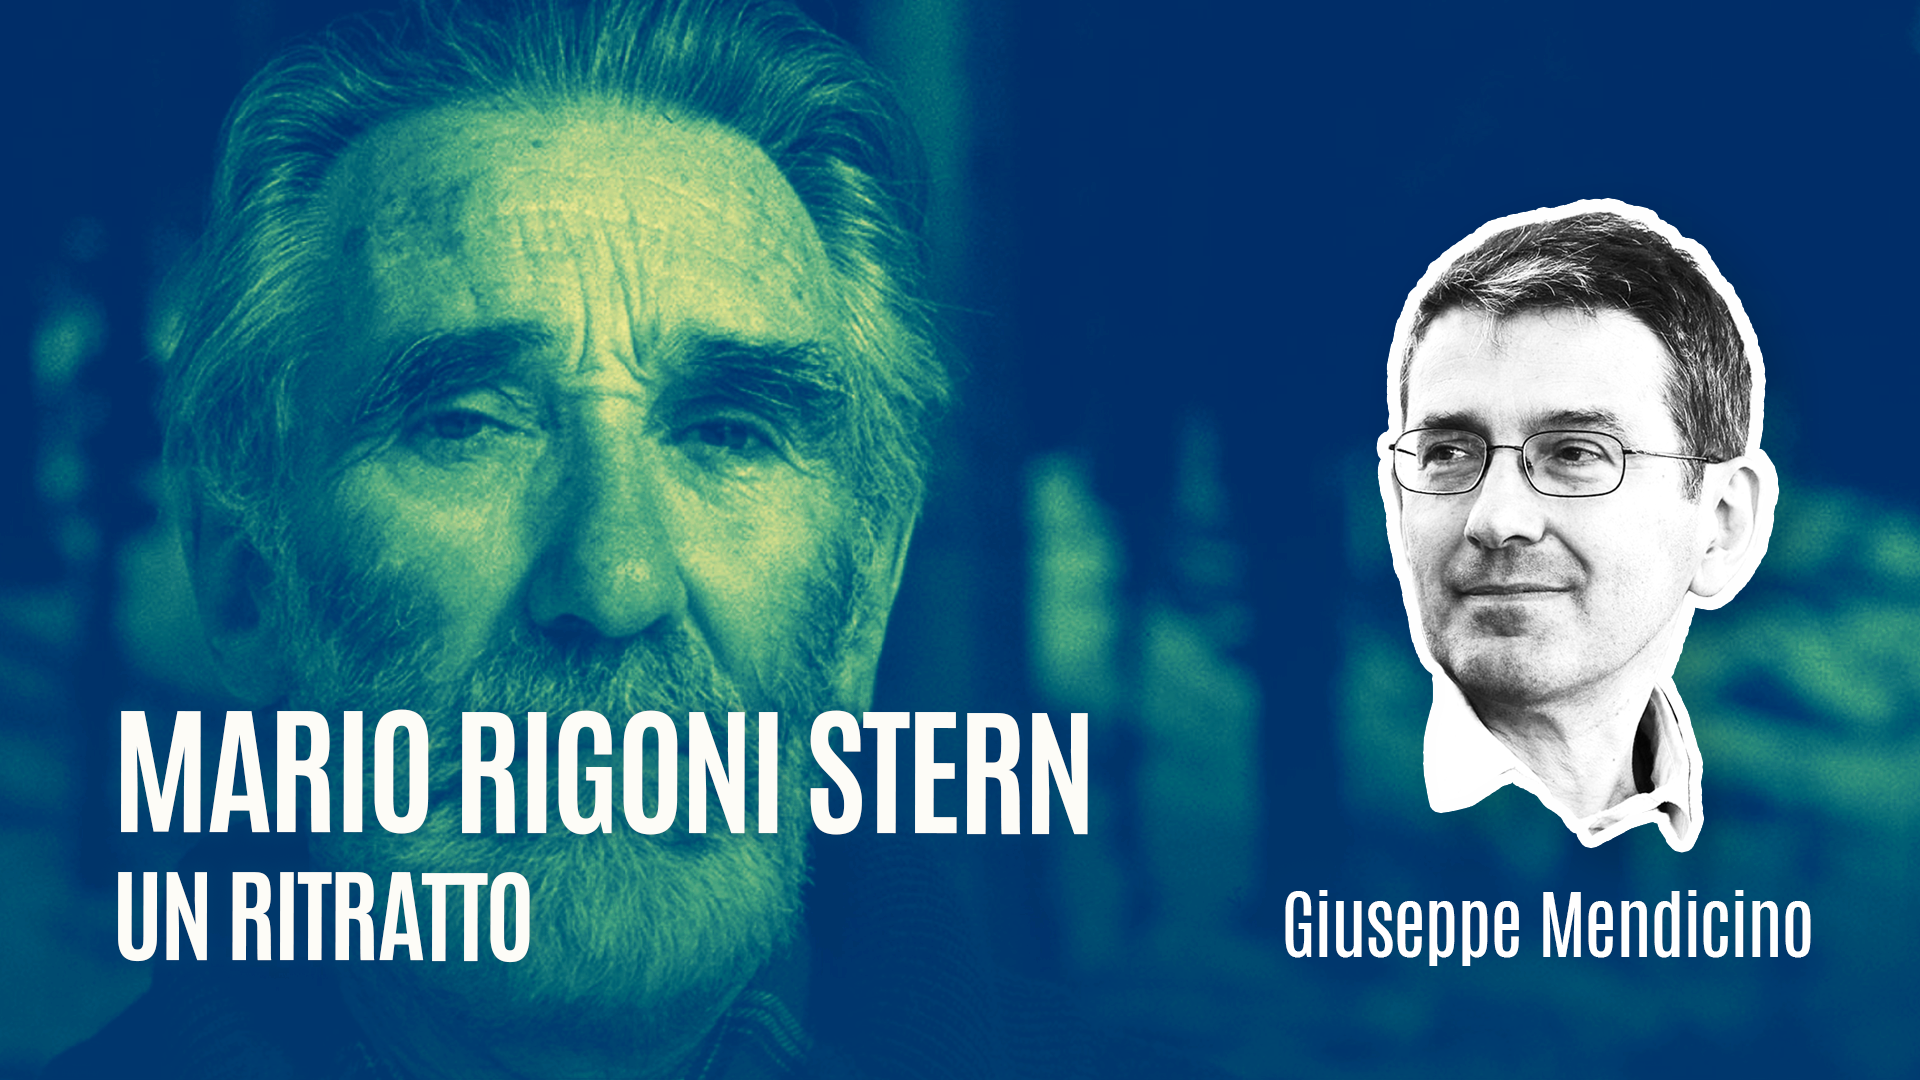 Giuseppe Mendicino racconta “Mario Rigoni Stern”